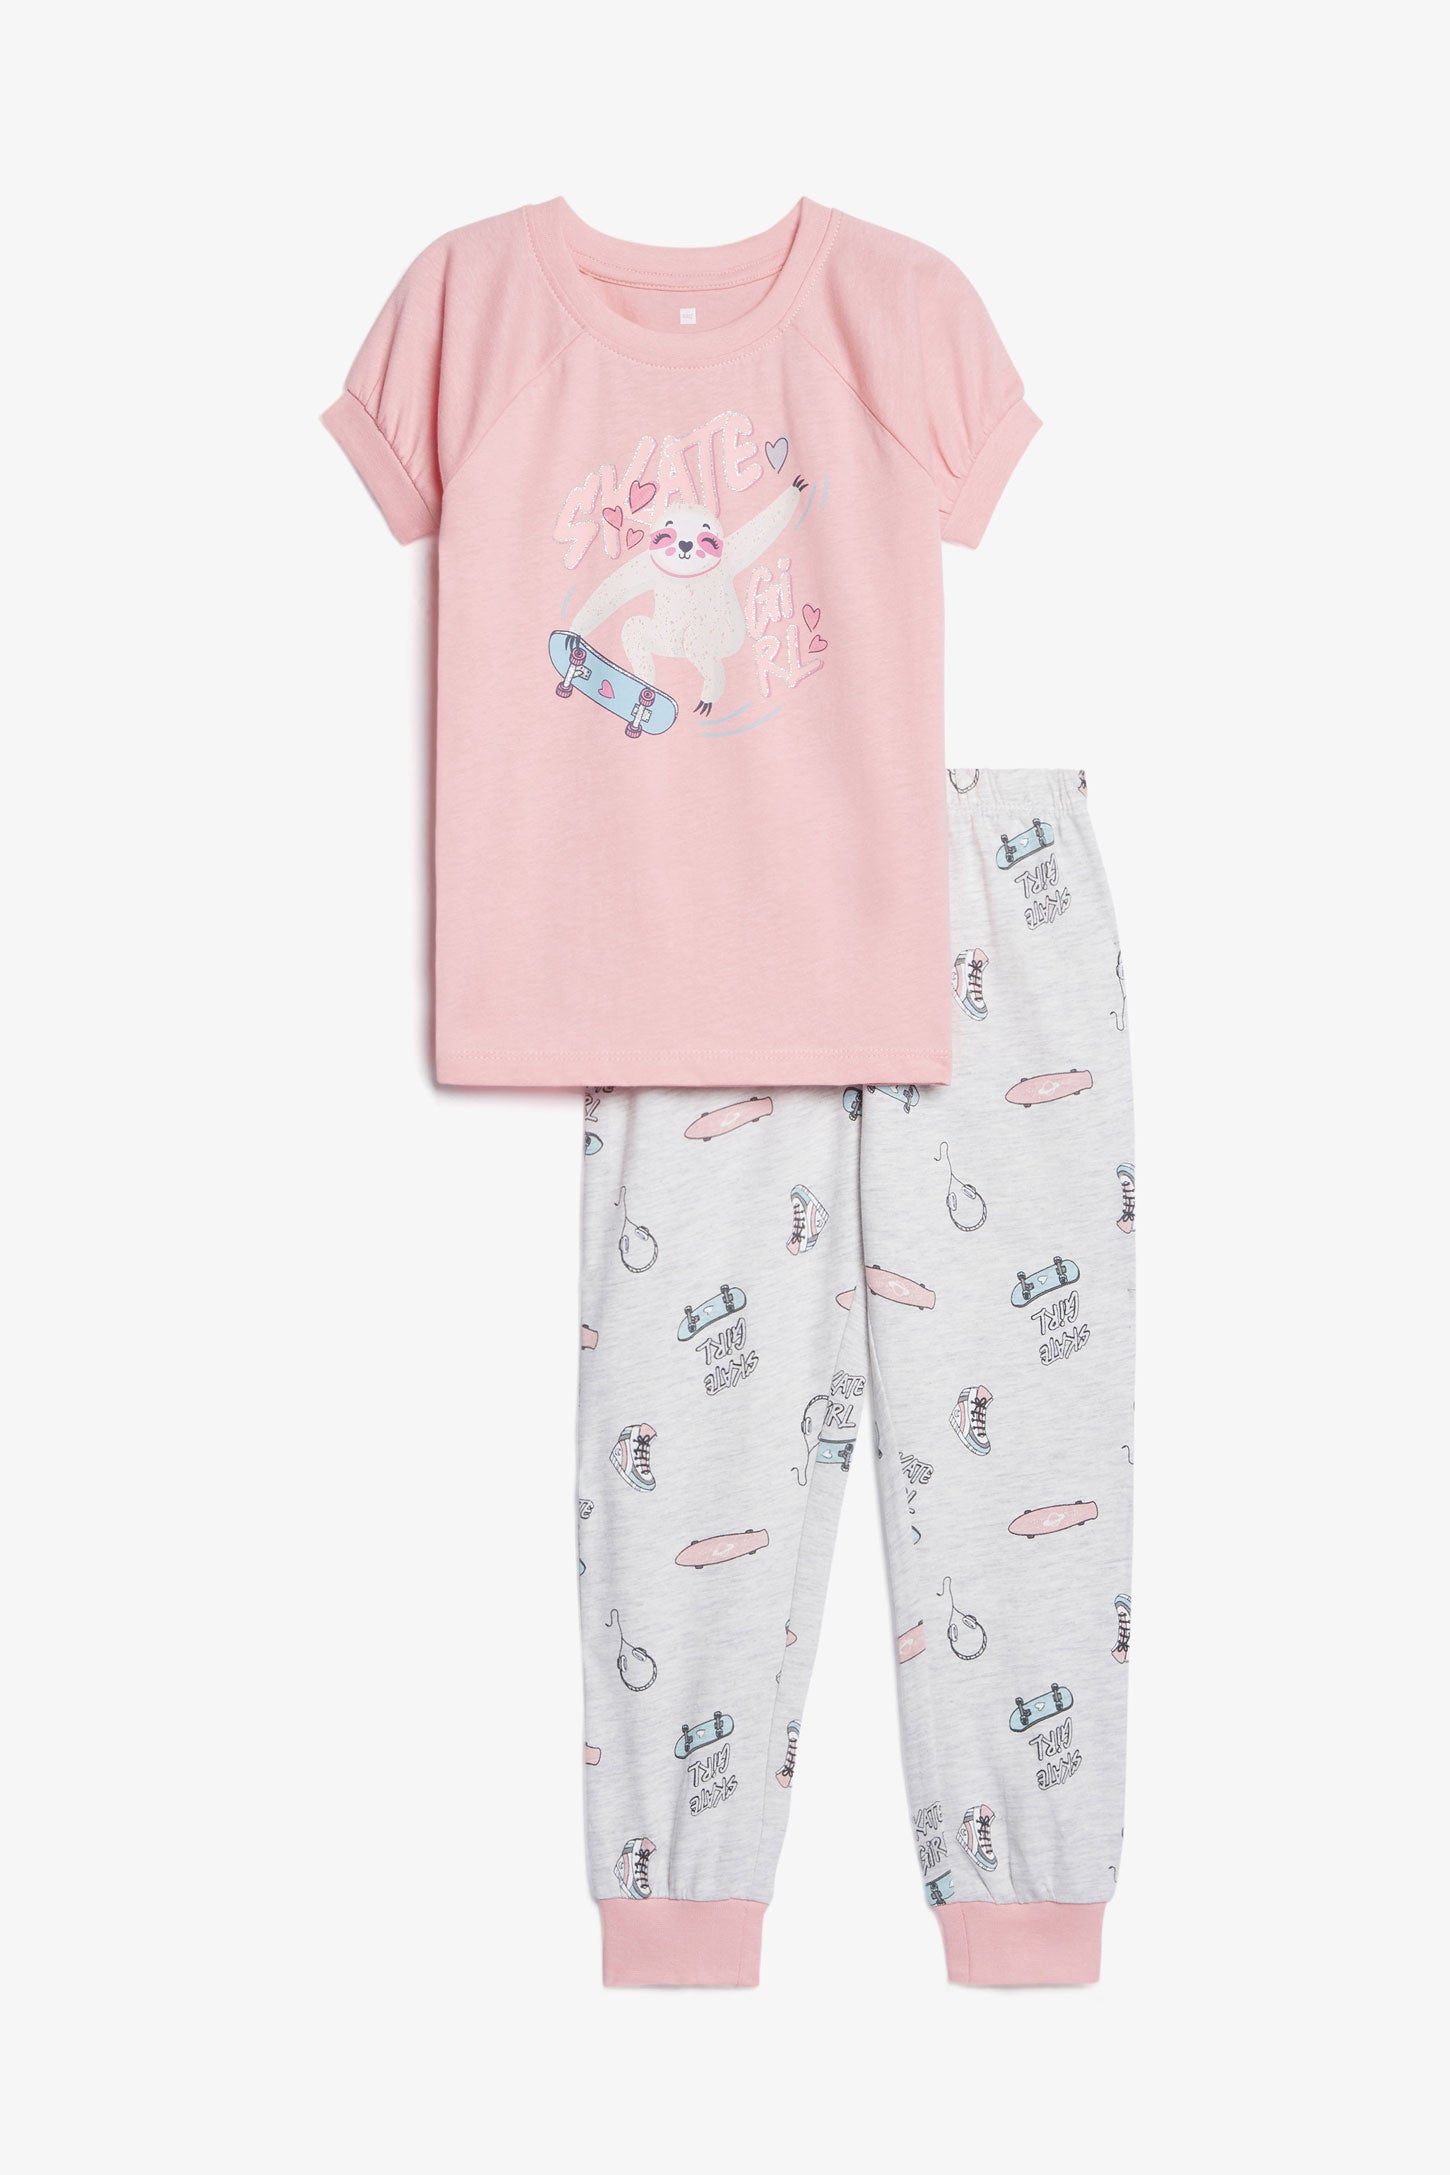 Pyjama 2-pièces en coton, 2/35$ - Enfant fille && ROSE